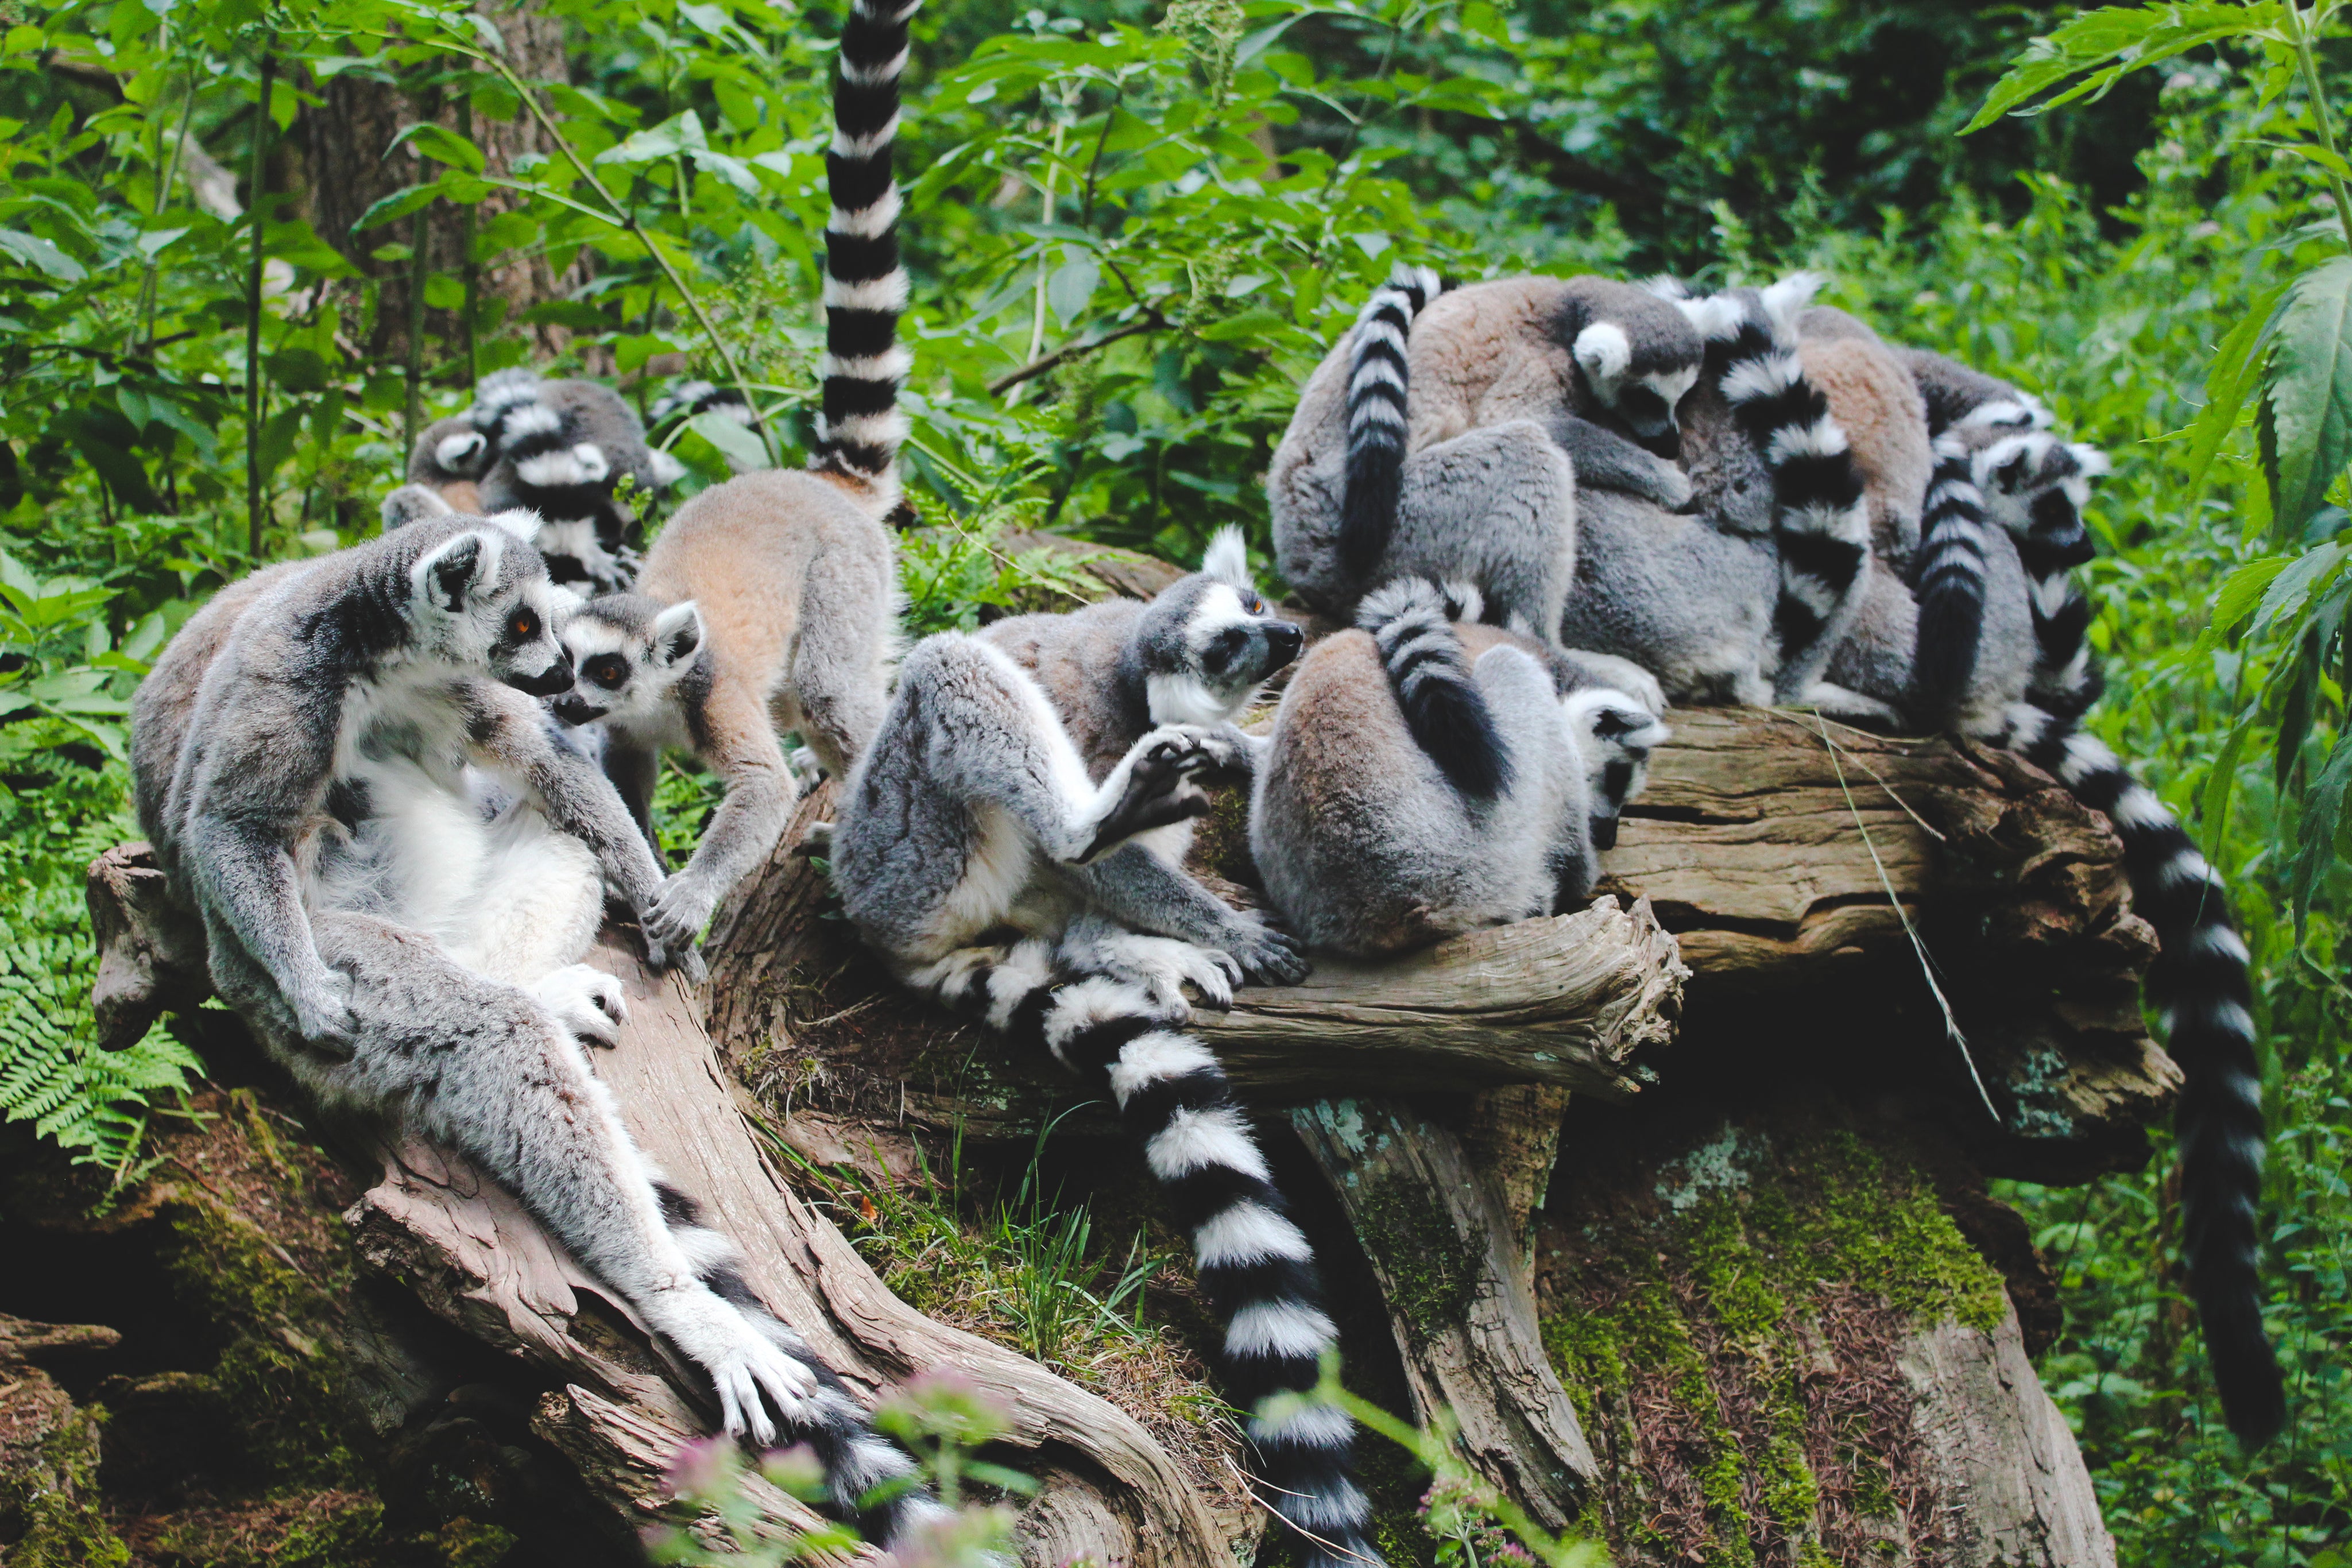 files/lemur-huddle.jpg